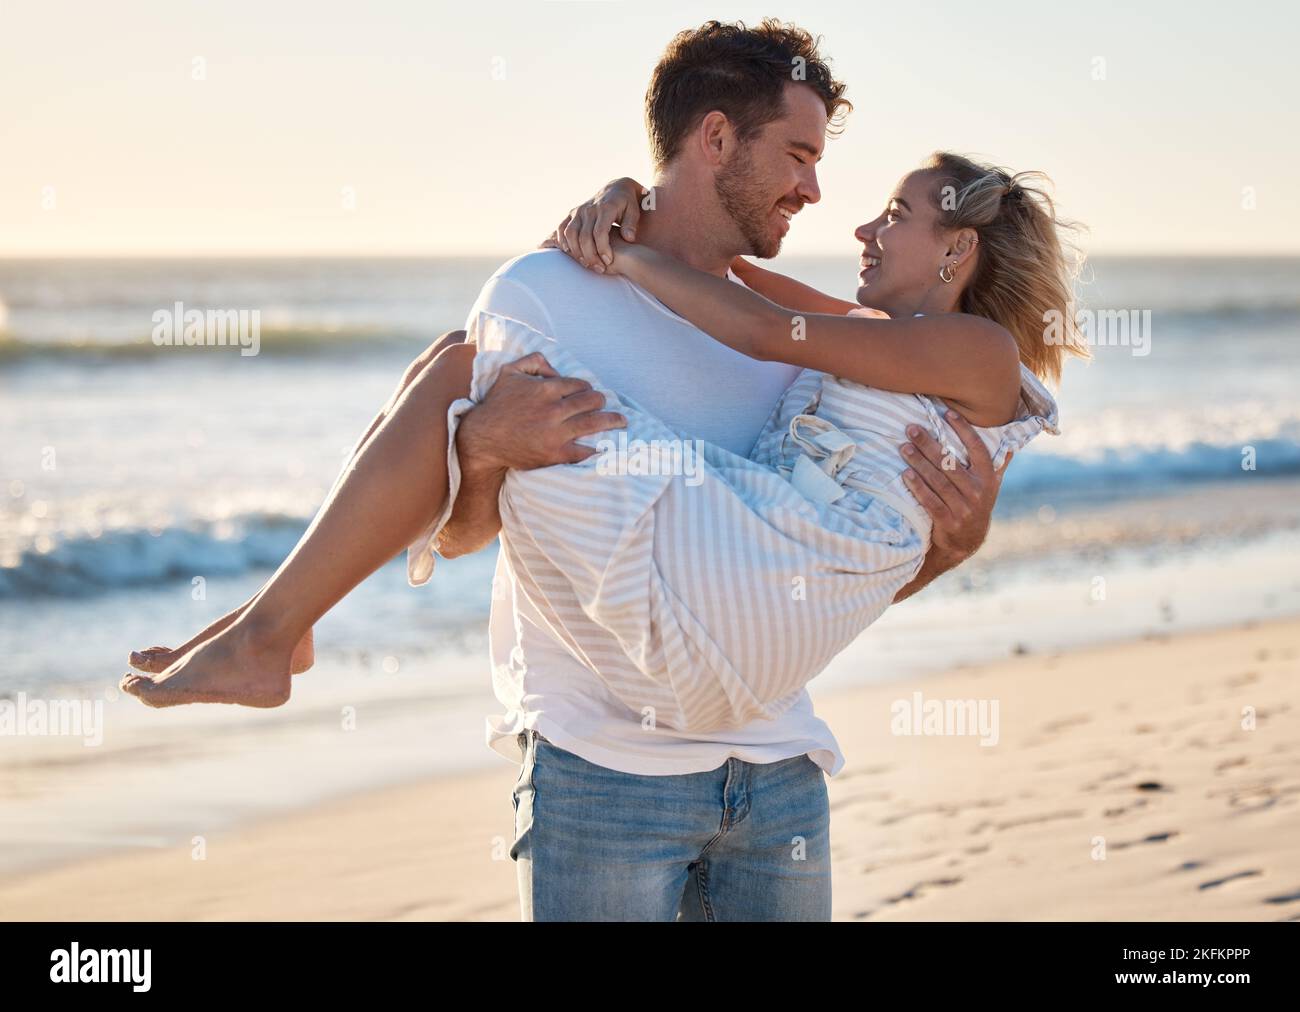 Paar, Strand und Mann tragen Frau für Liebe, Entspannung und Ehe unterstützen zusammen auf Reise Abenteuer oder Urlaub. Freiheit, Vertrauen und glücklicher Mensch Stockfoto